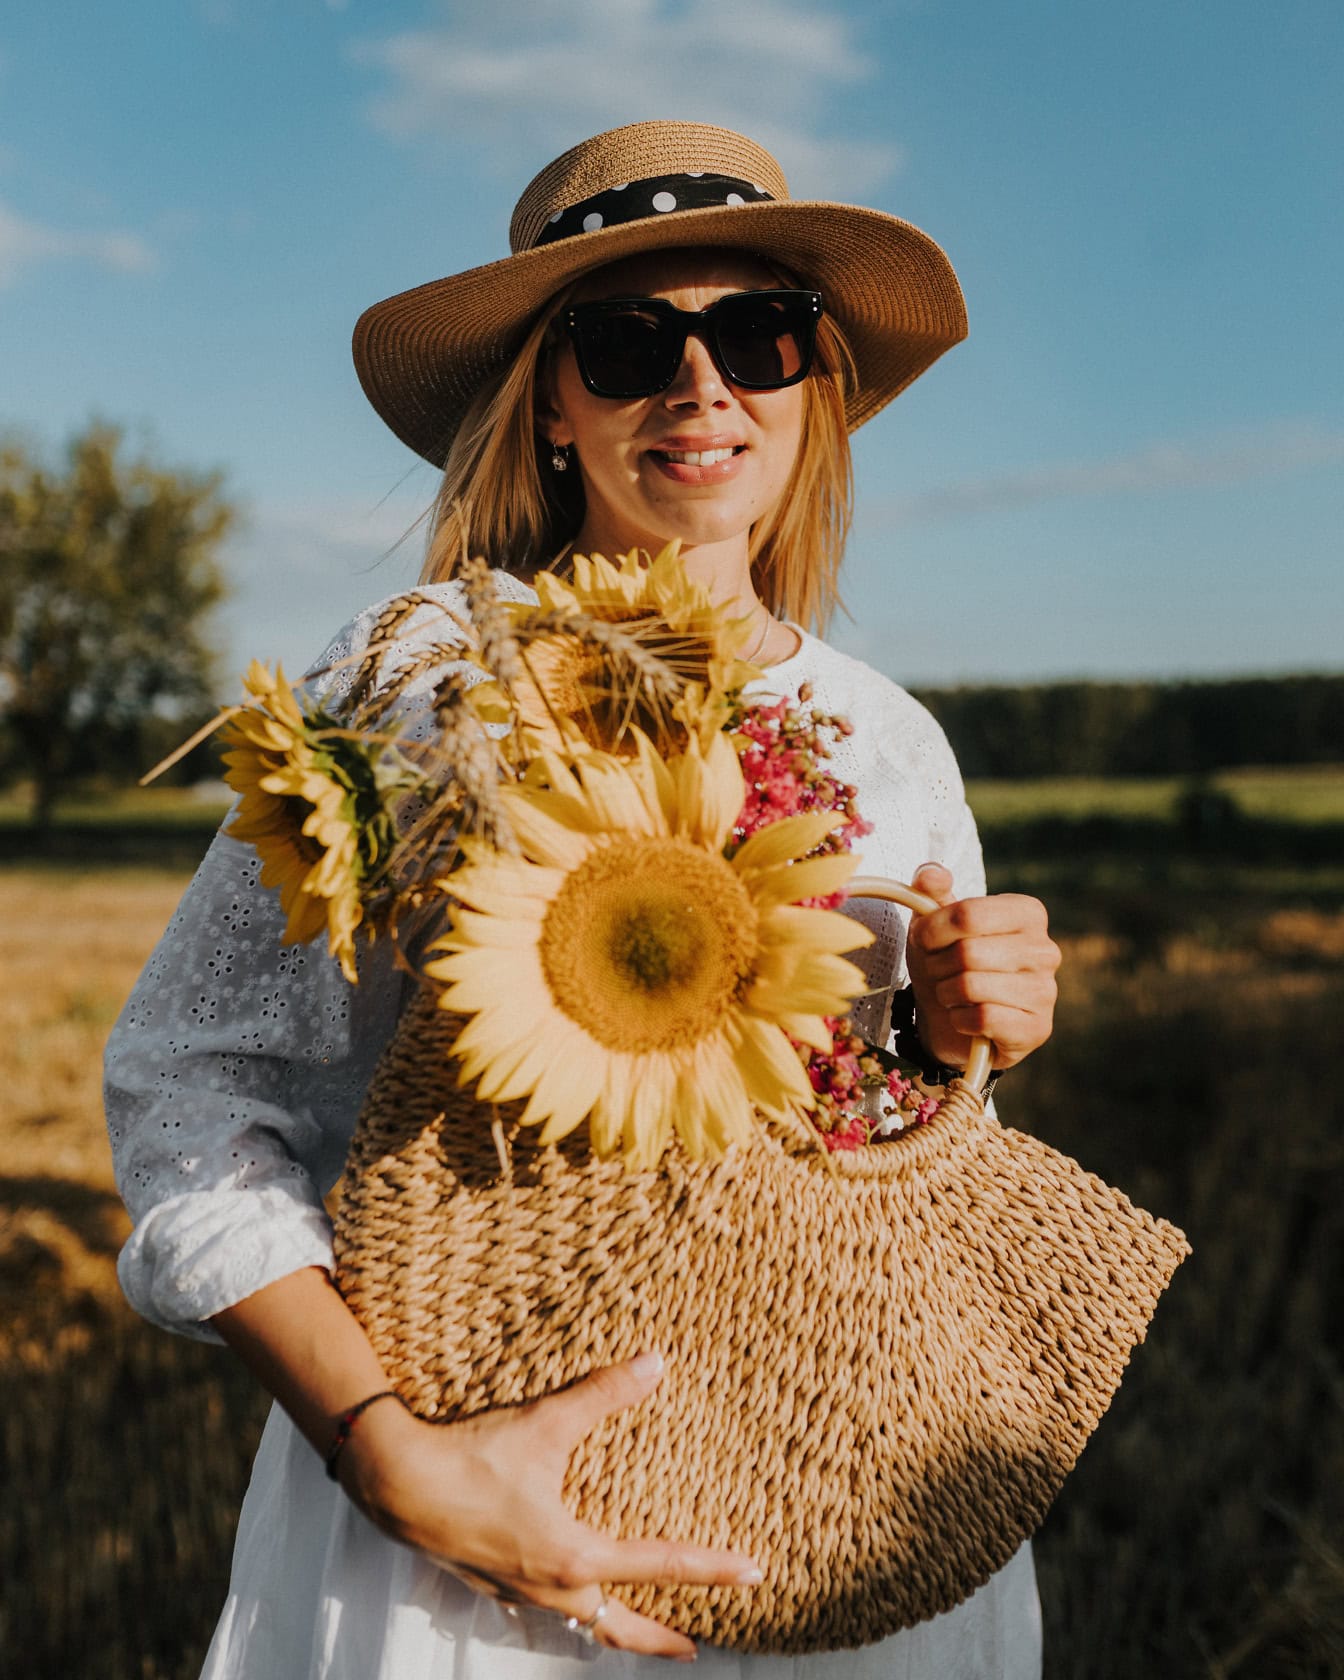 Güzel genç sarışın, tarlada örme bir ayçiçeği çantası tutarken hasır şapka ve güneş gözlüğü takıyor